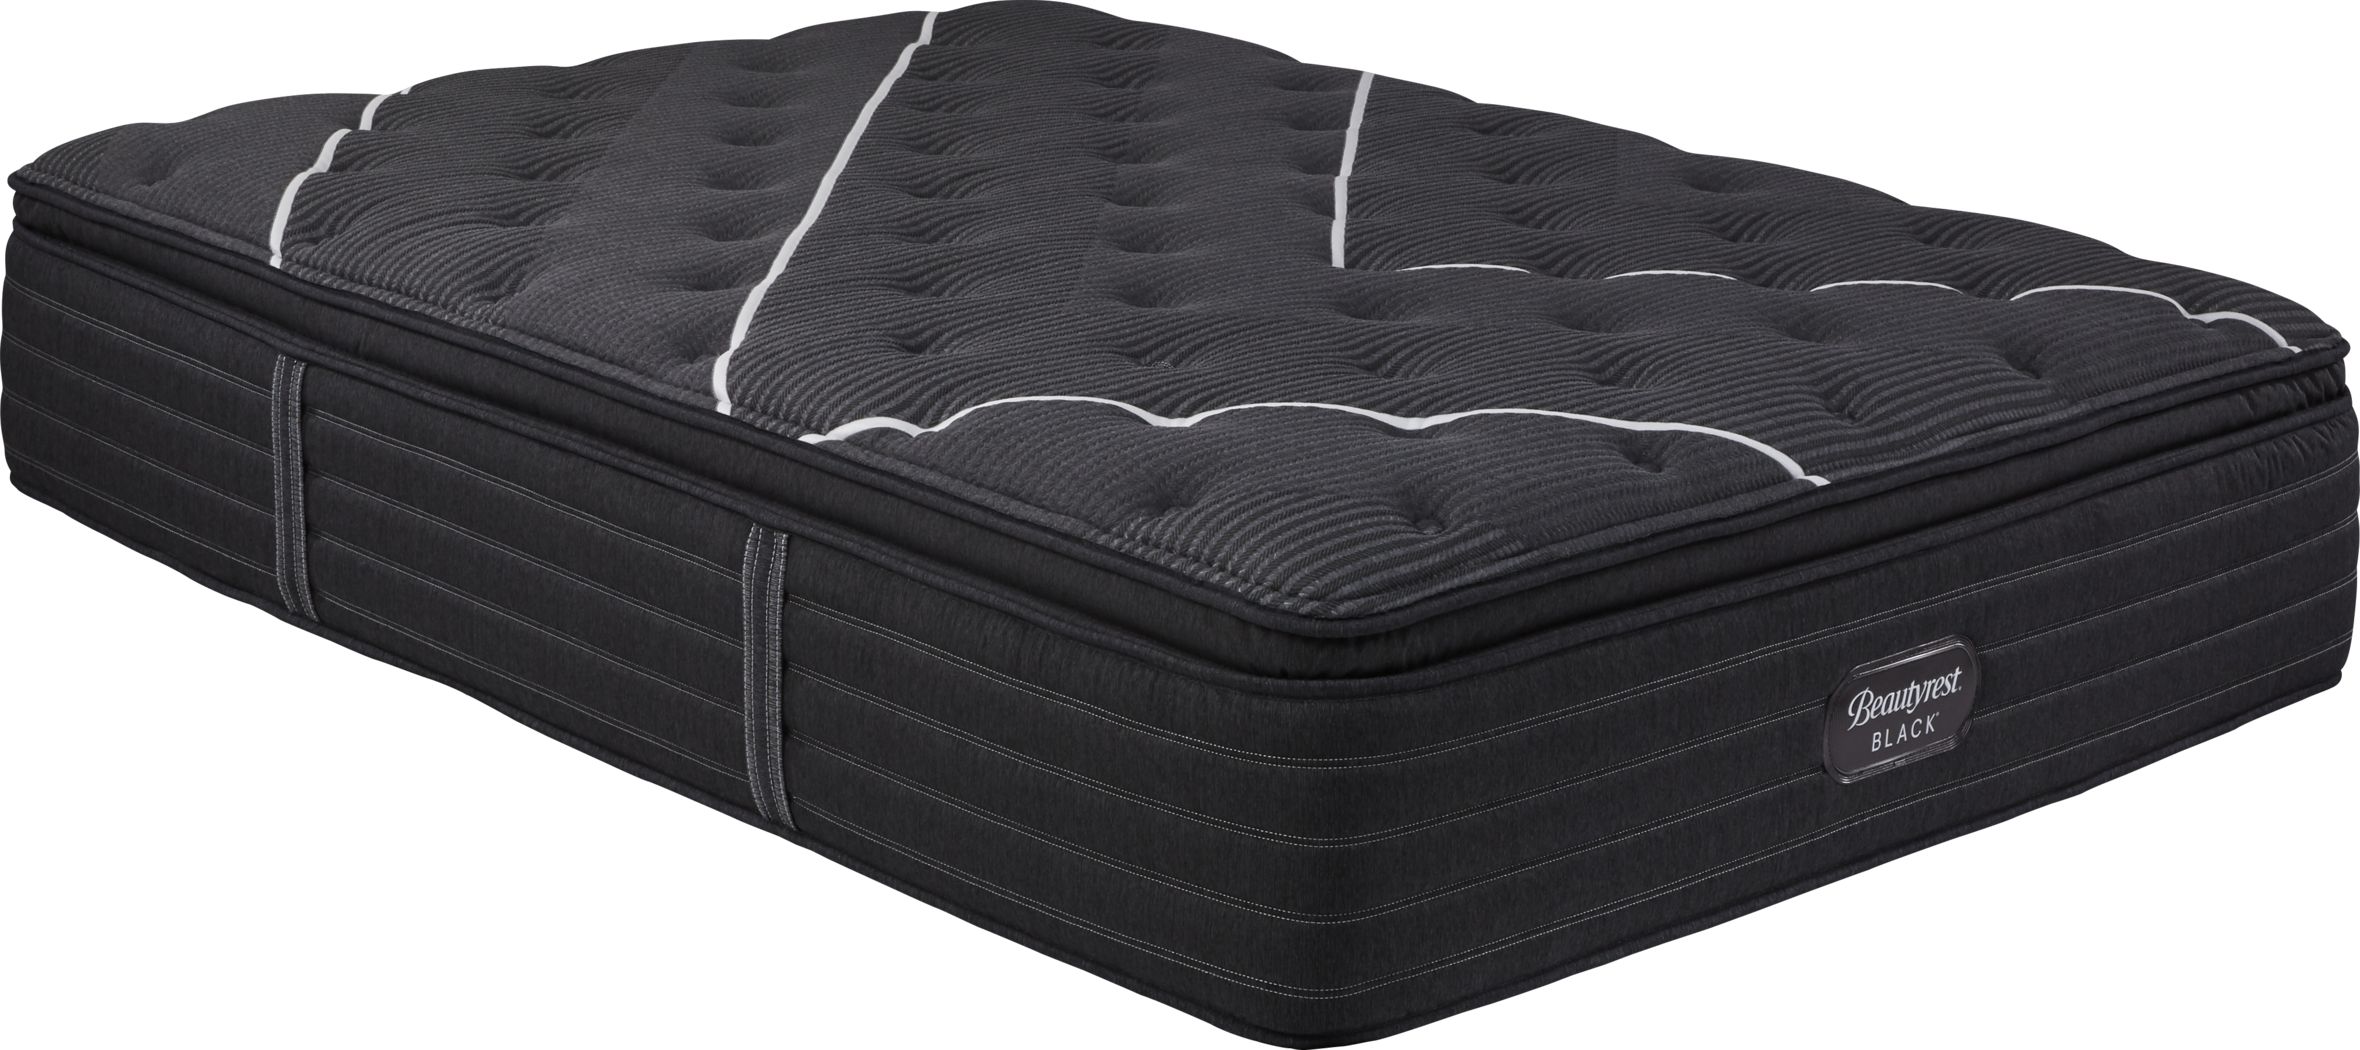 beautyrest black pillow top king mattress